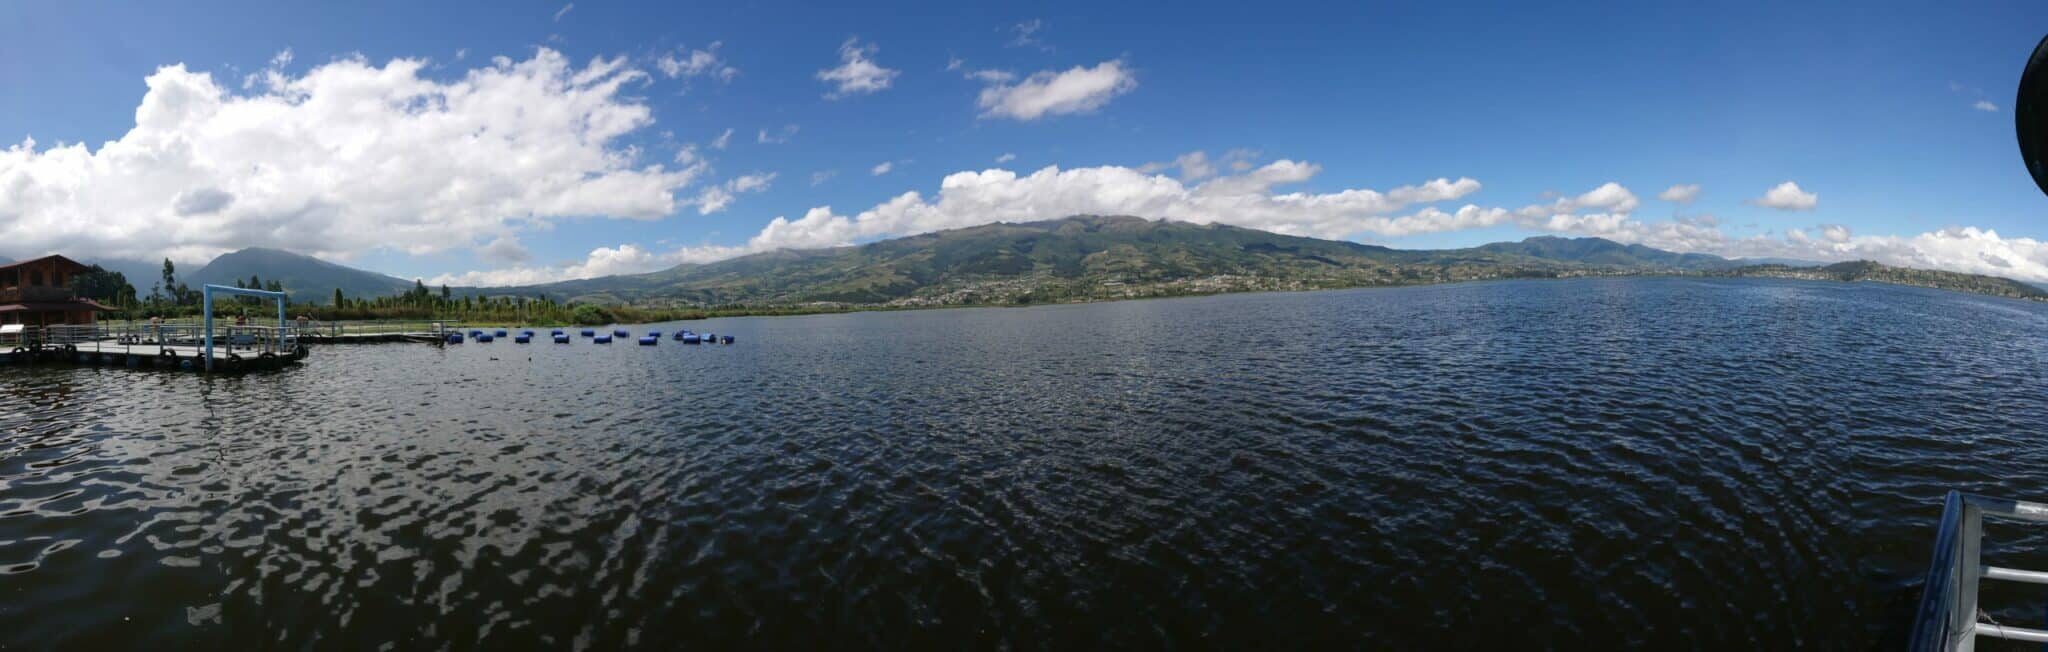 Imbabura a Province of Lakes and Lagoons.